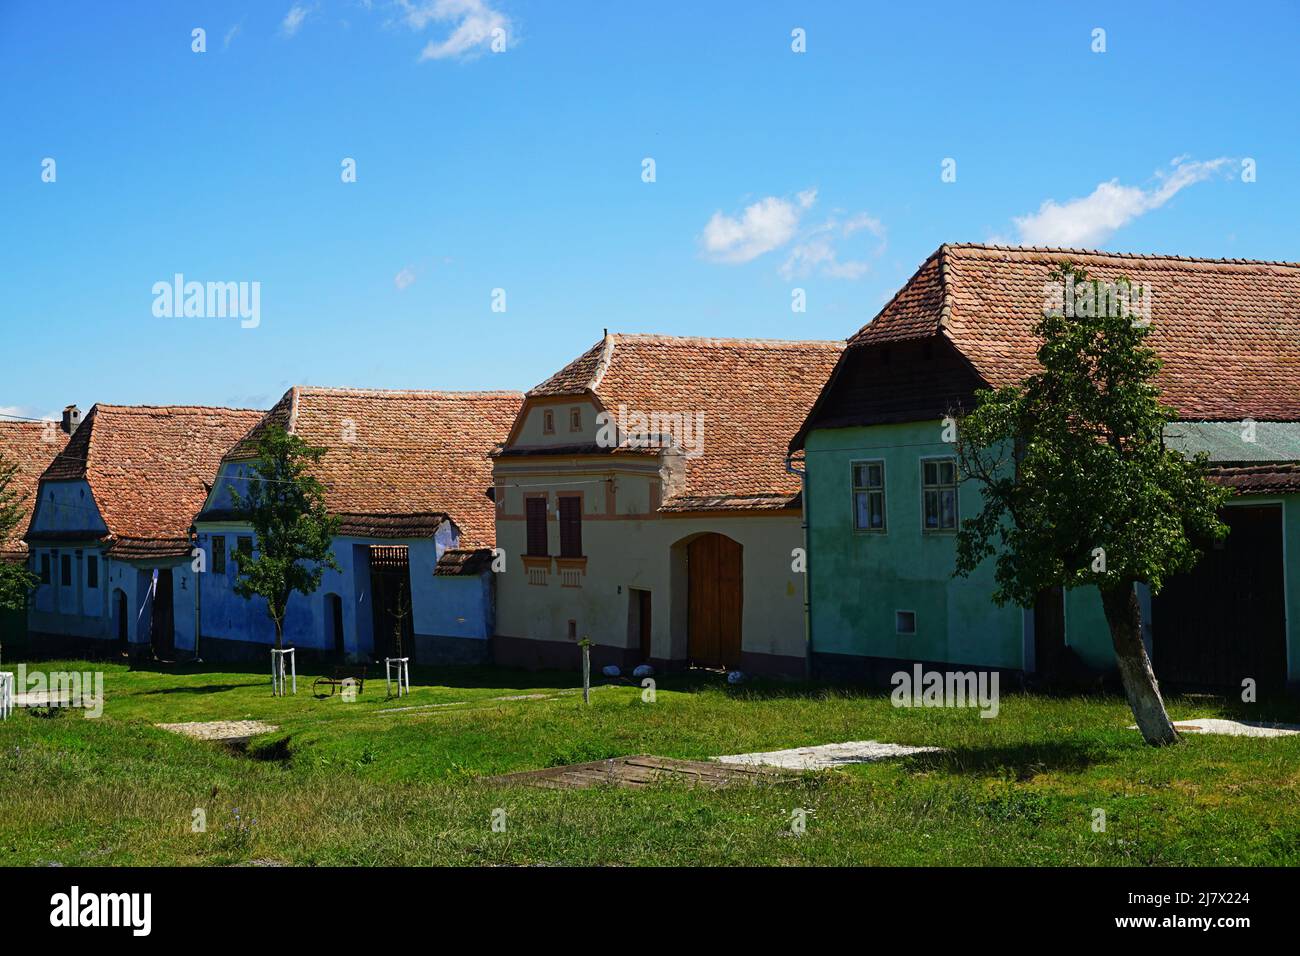 Casas de hilera tradicionales y coloridas en el pueblo de Viscri en el verano, rural de Transilvania Foto de stock